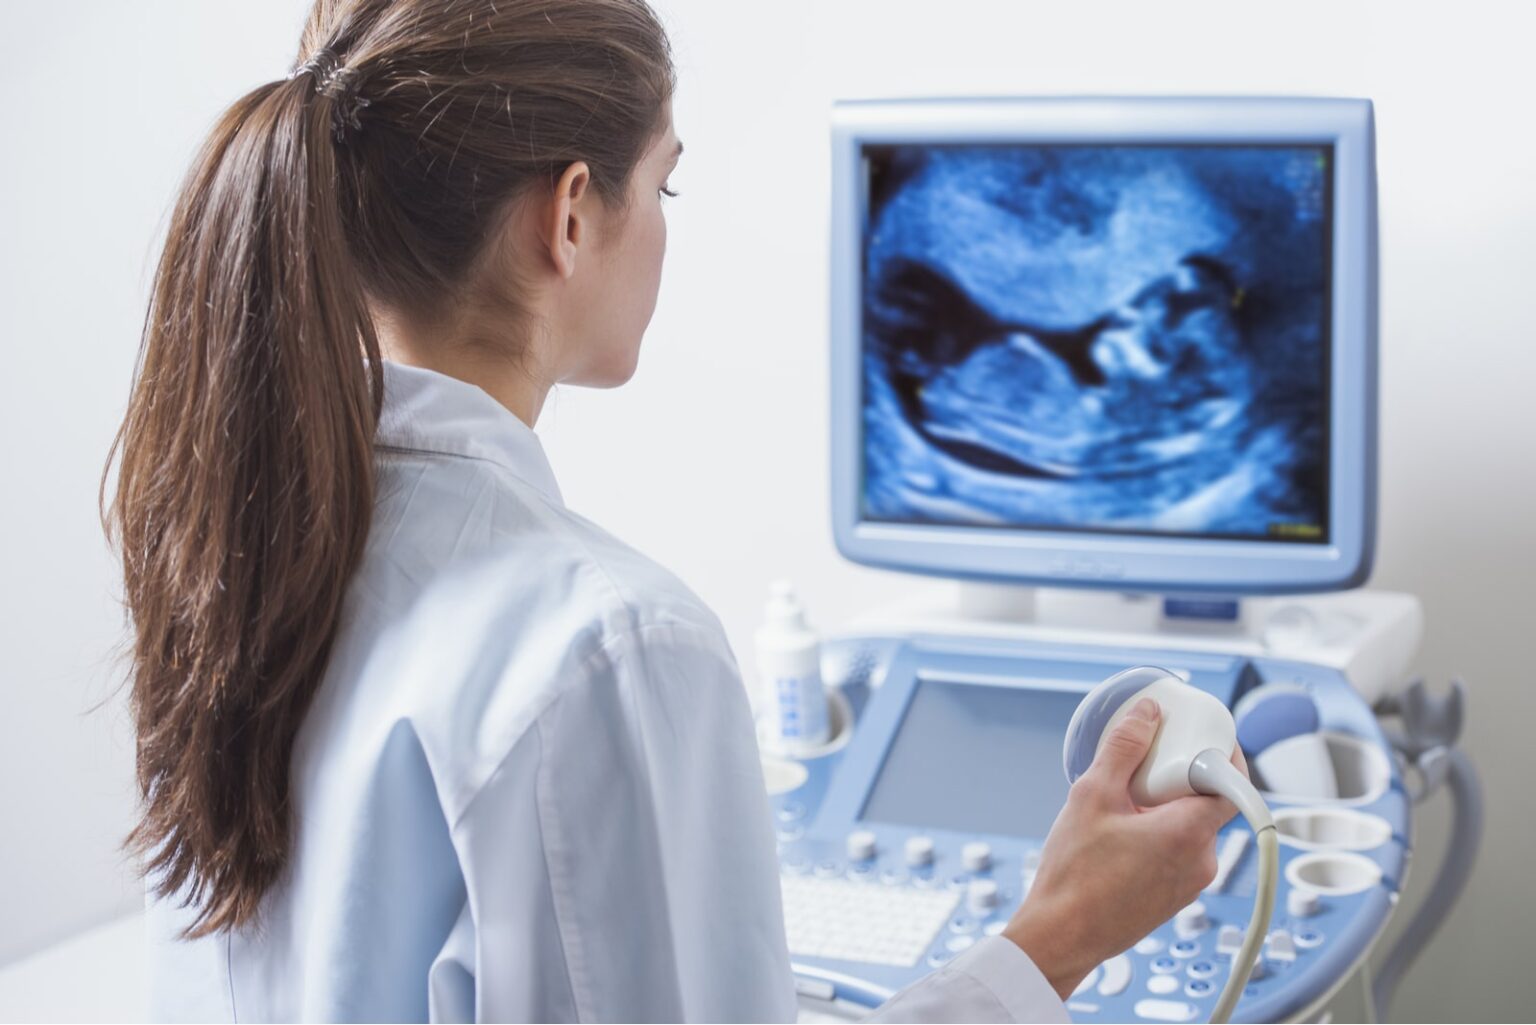 badanie ultrasonograficzne